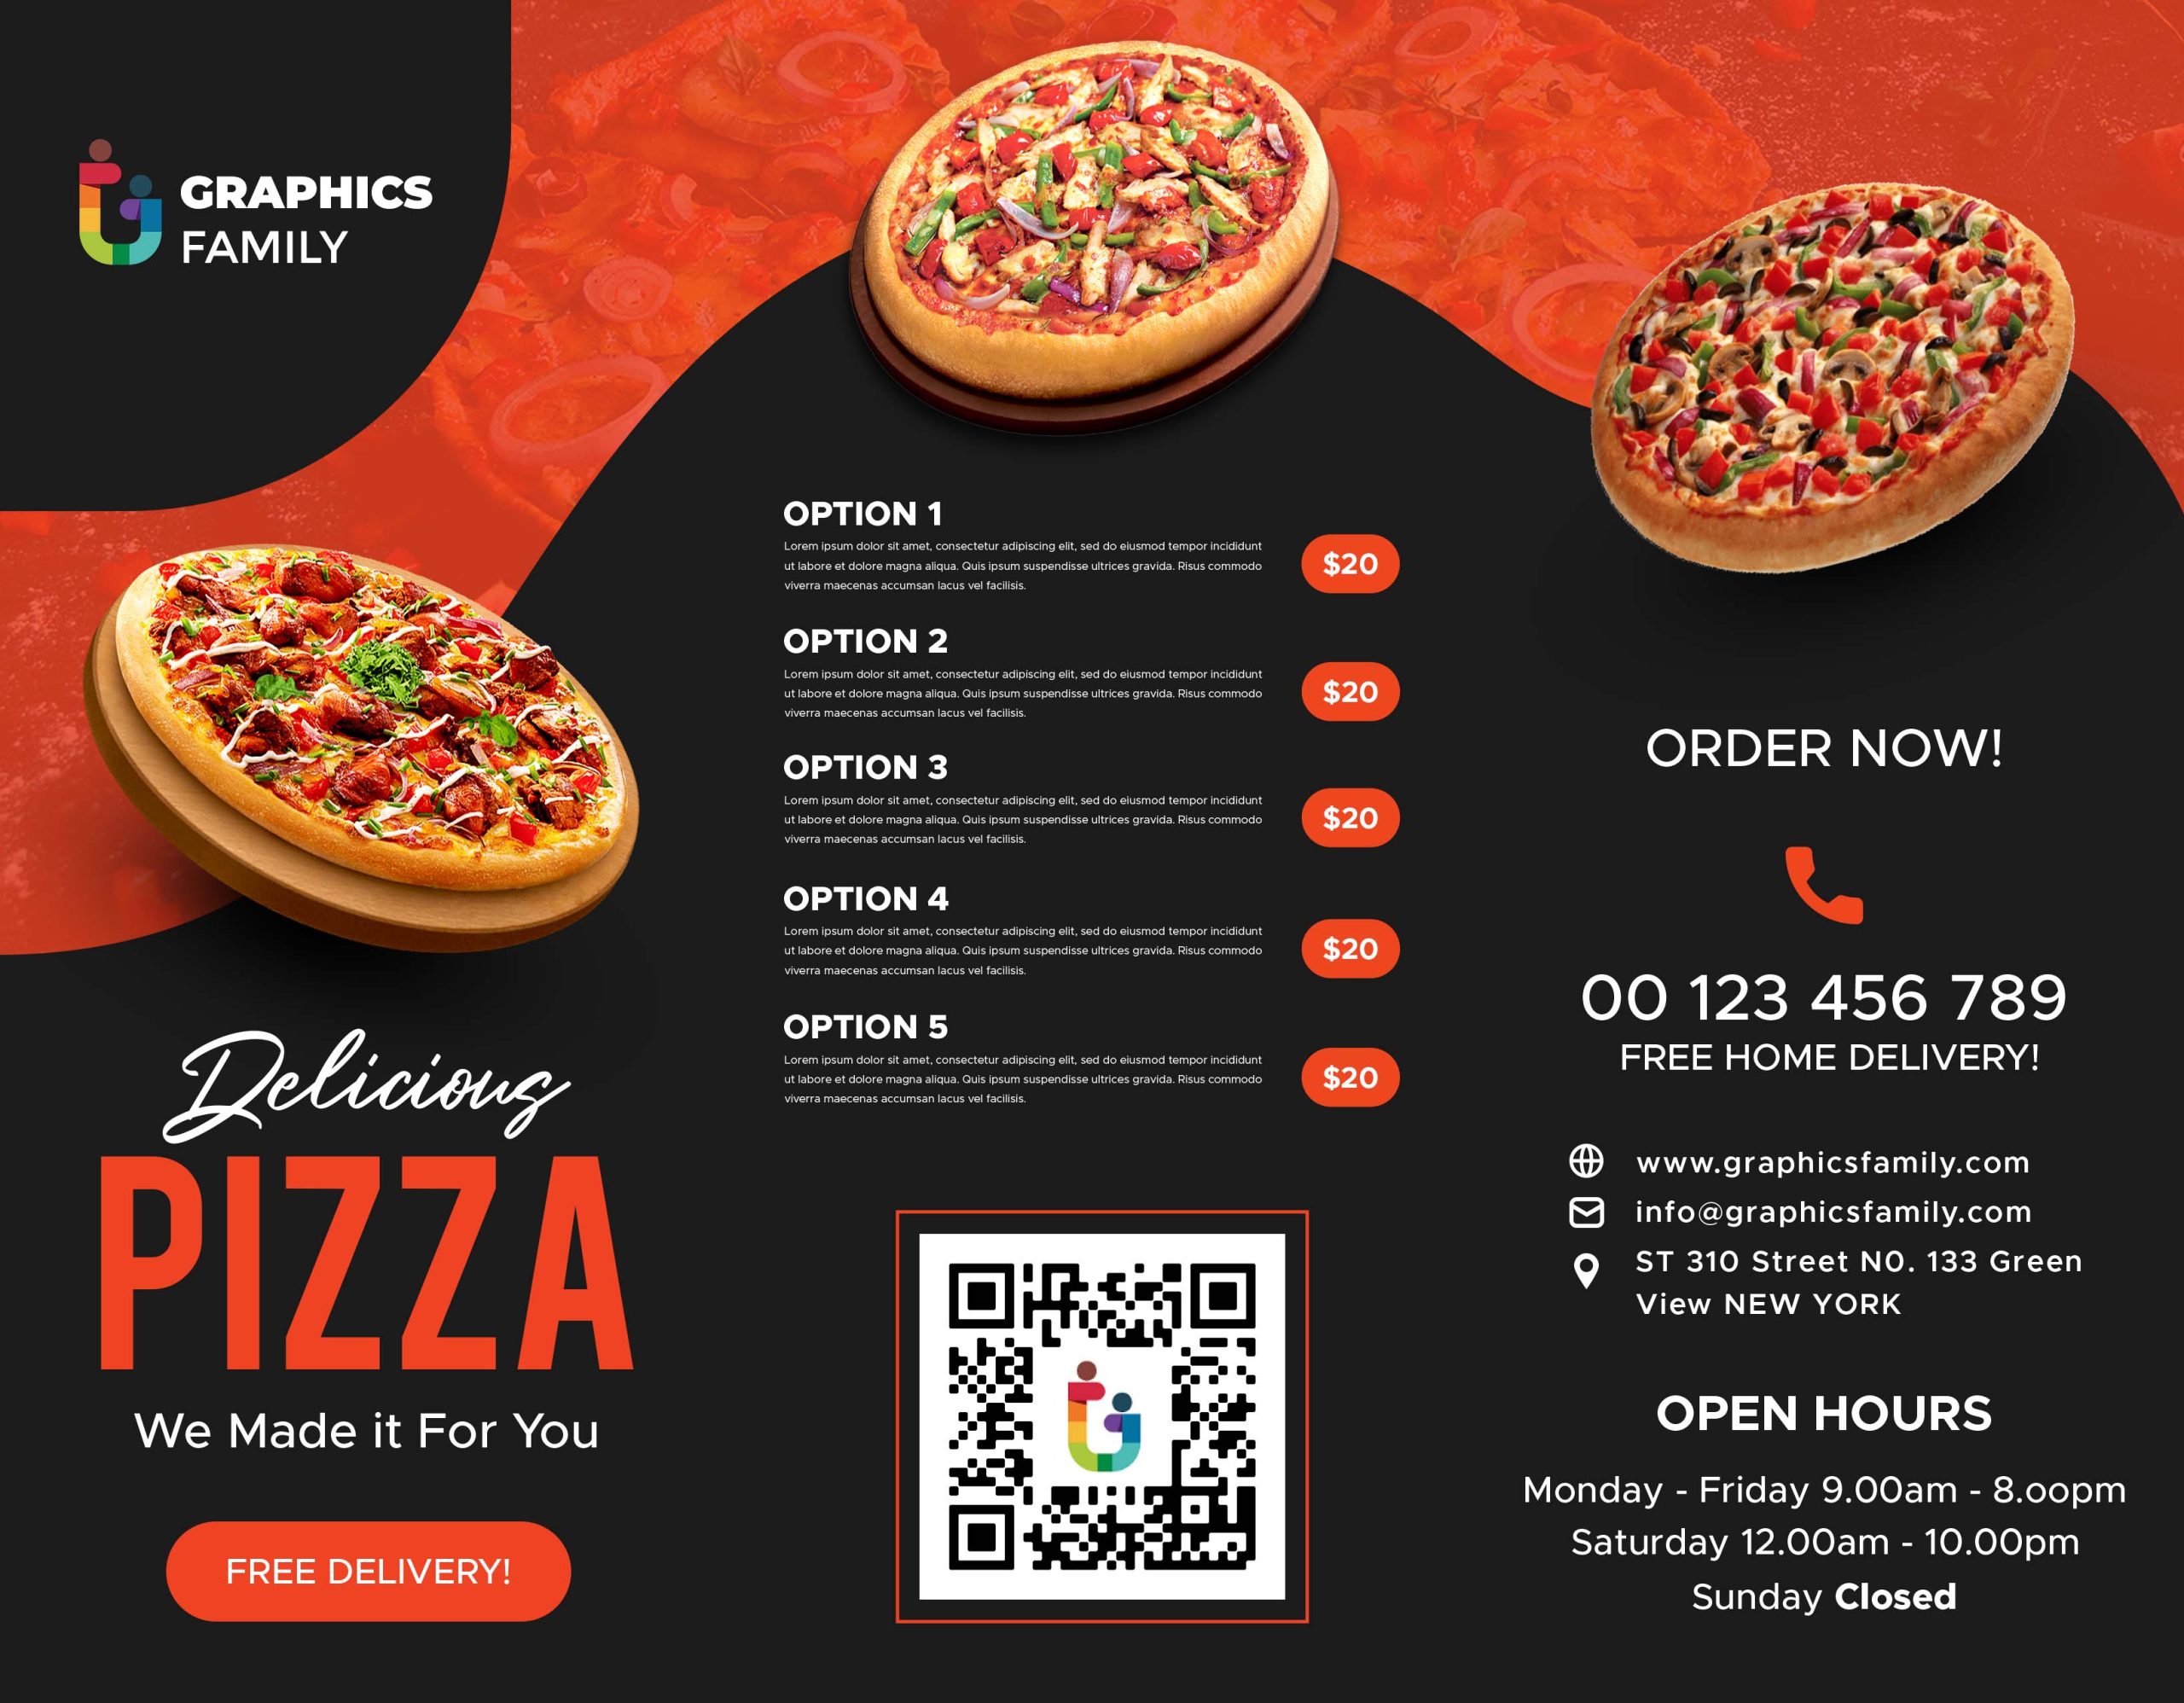 Pizza Icon Logo Design Template Download, pizza Icon Logo Design